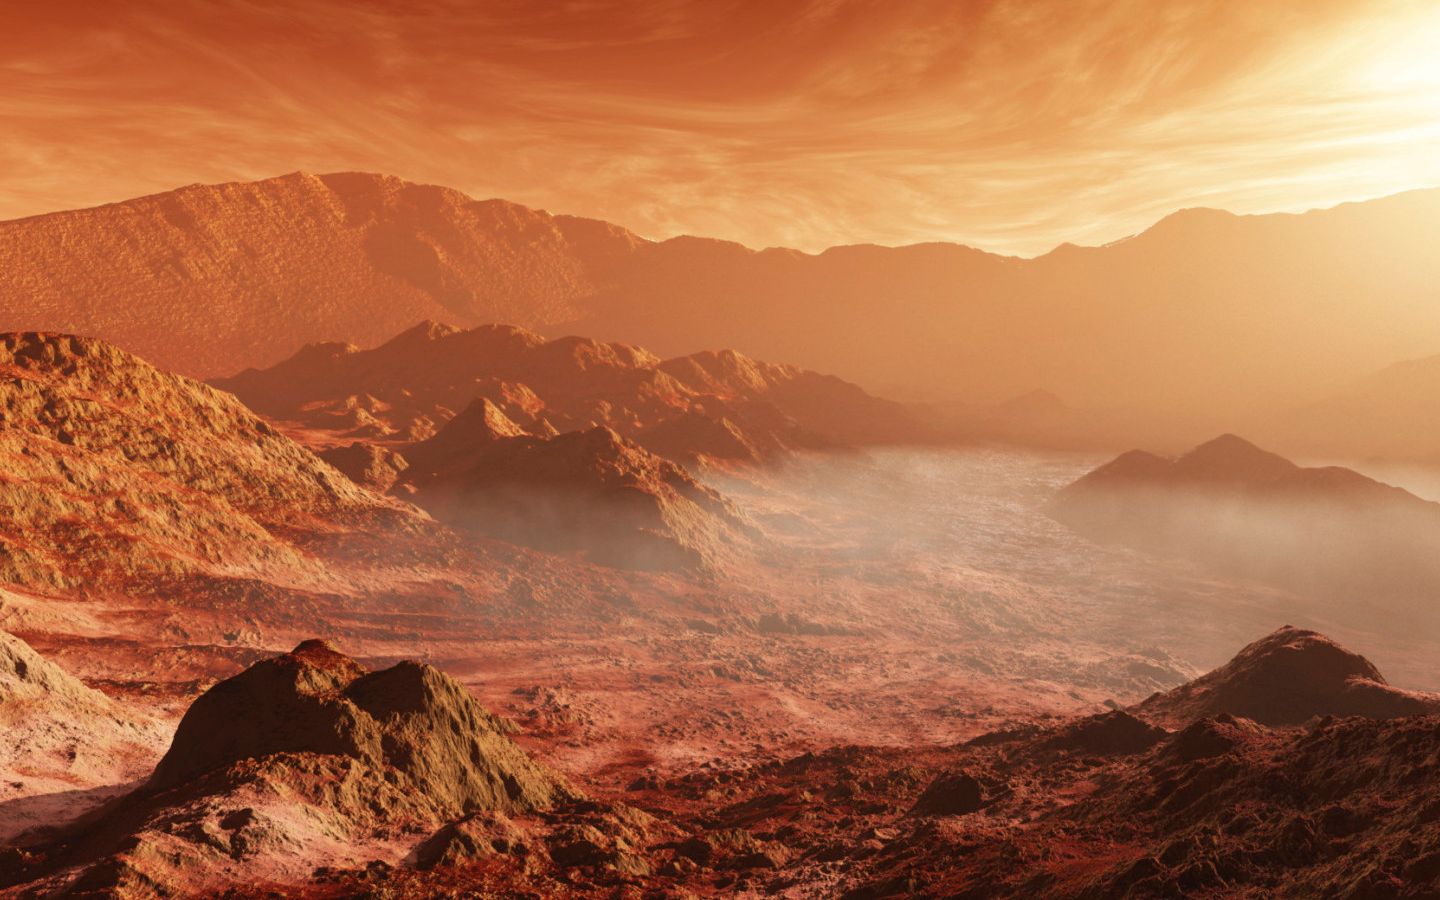 中国卫星登陆火星!意外发现绝美风景,或许真能成为下一个地球!